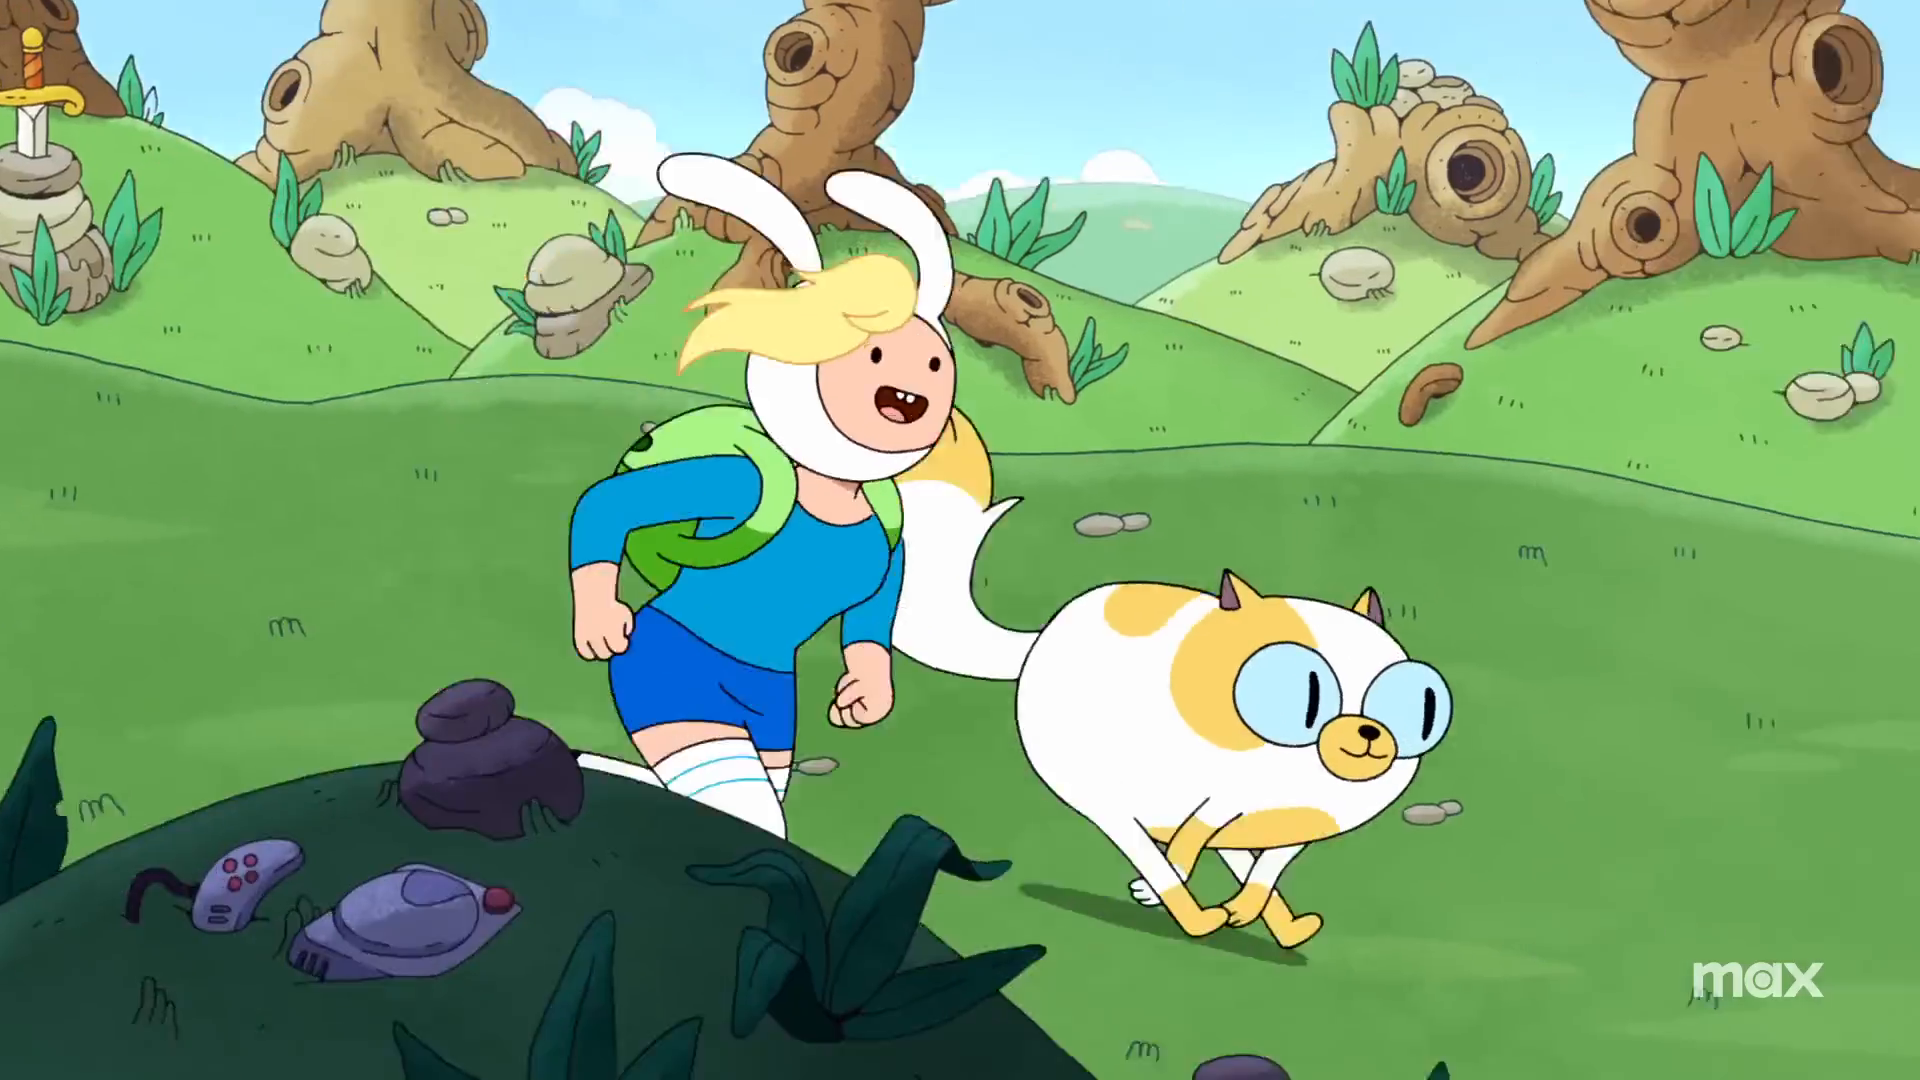 Adventure Time: Fionna & Cake recebe primeira espiada